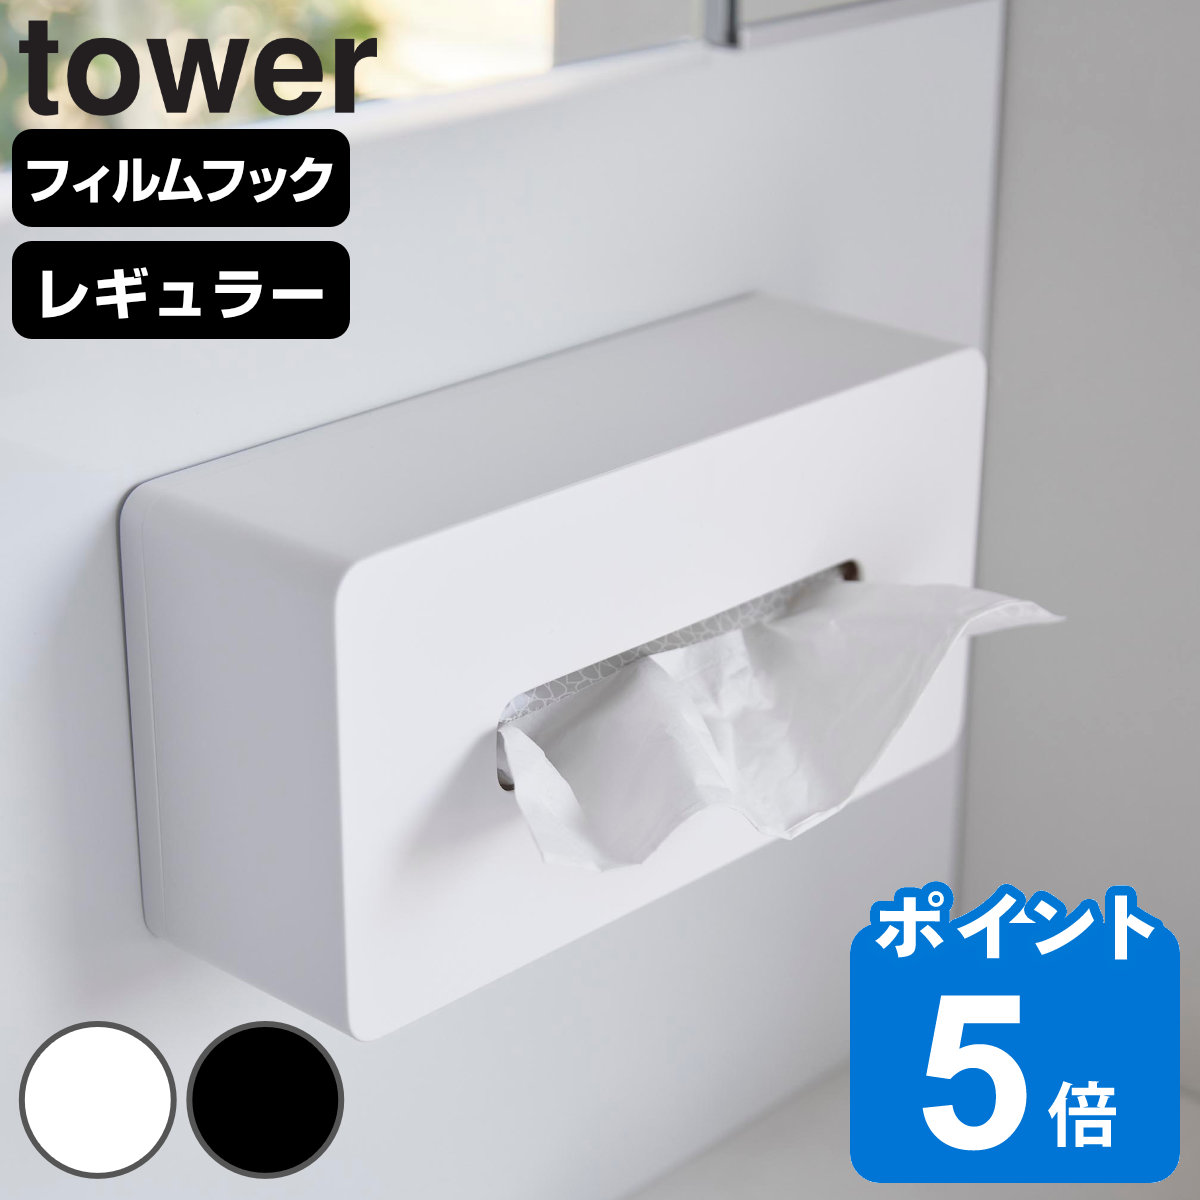 山崎実業 tower フィルムフックティッシュケース タワー レギュラーサイズ